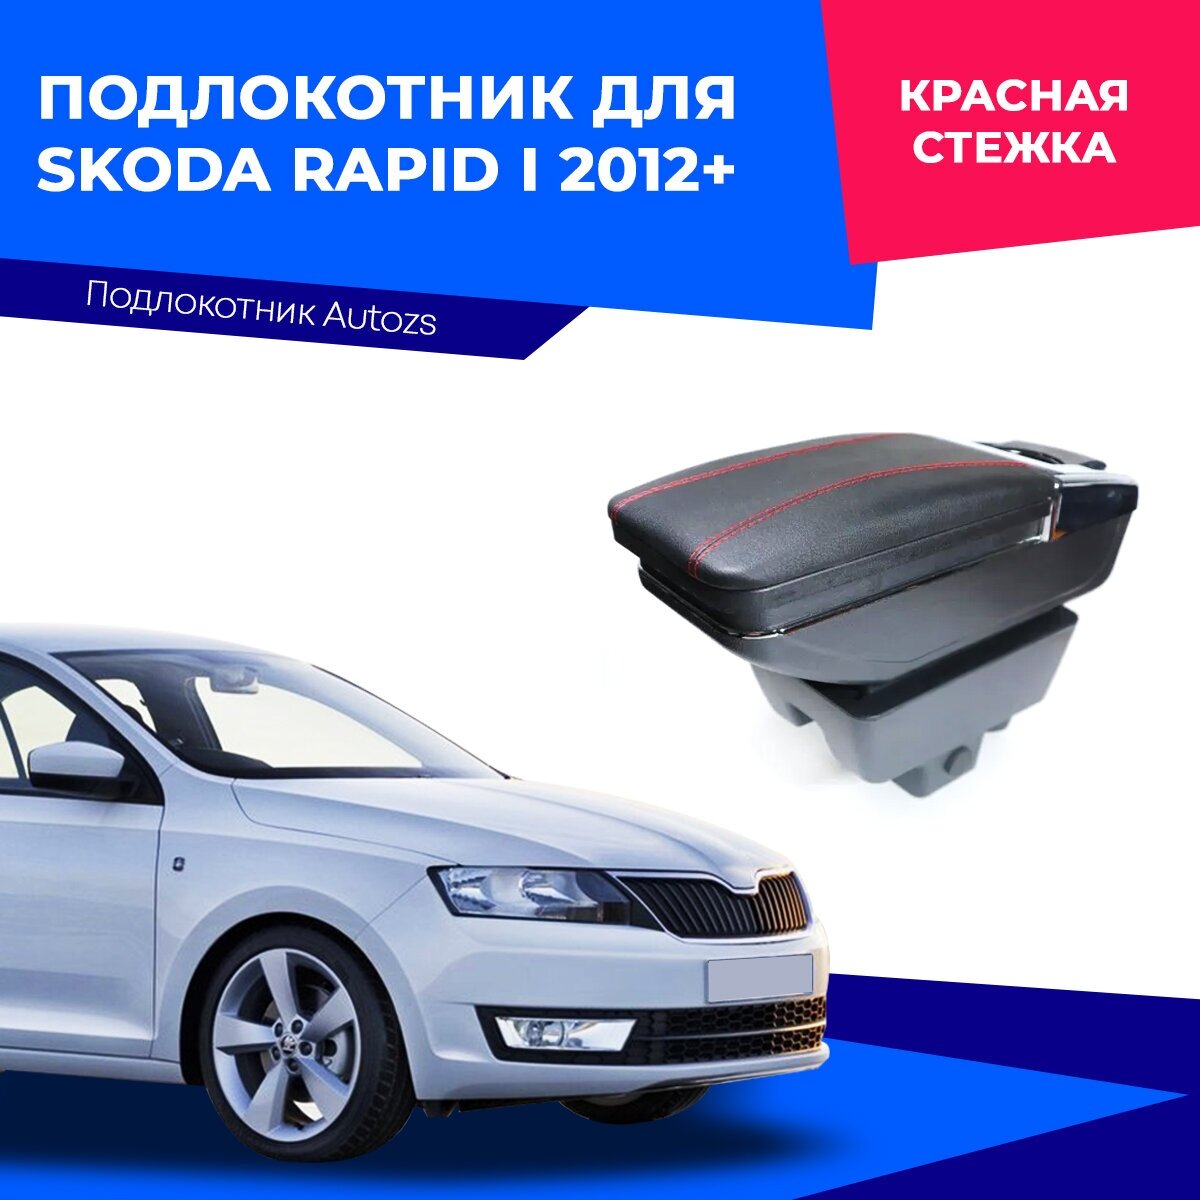 Подлокотник для Skoda Rapid I 2012+ (без USB)/ Шкода Рапид 1 2012+ экокожа